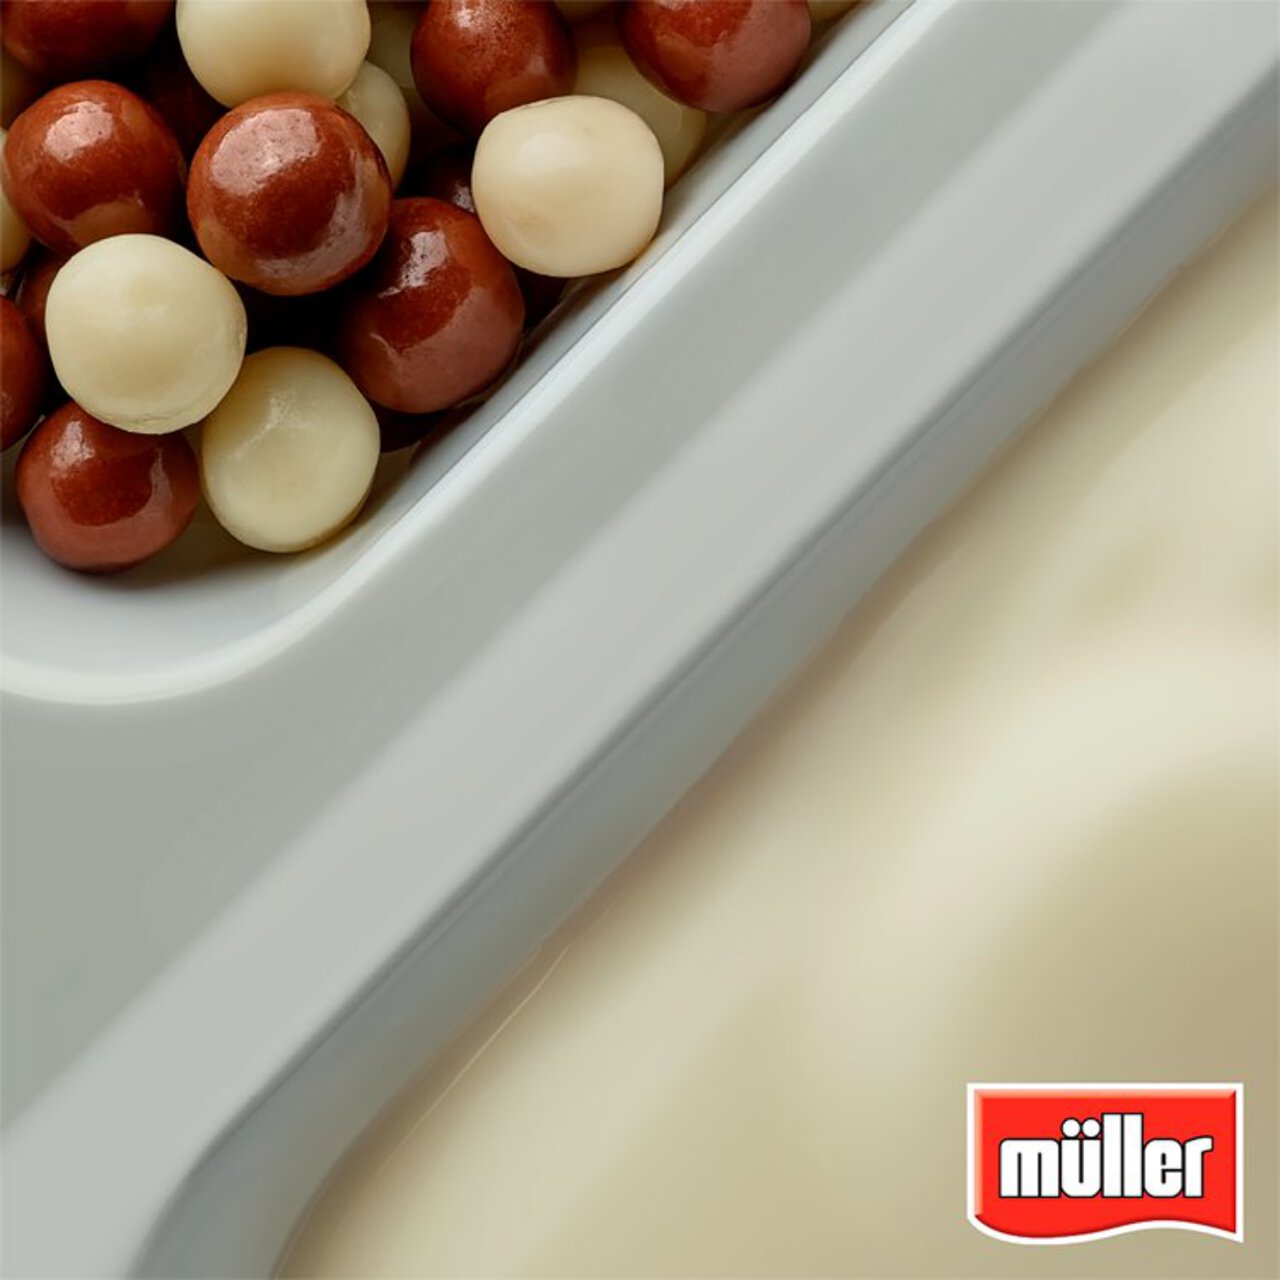 Muller Corner Vanilla Yogurt with Chocolate Balls 124g